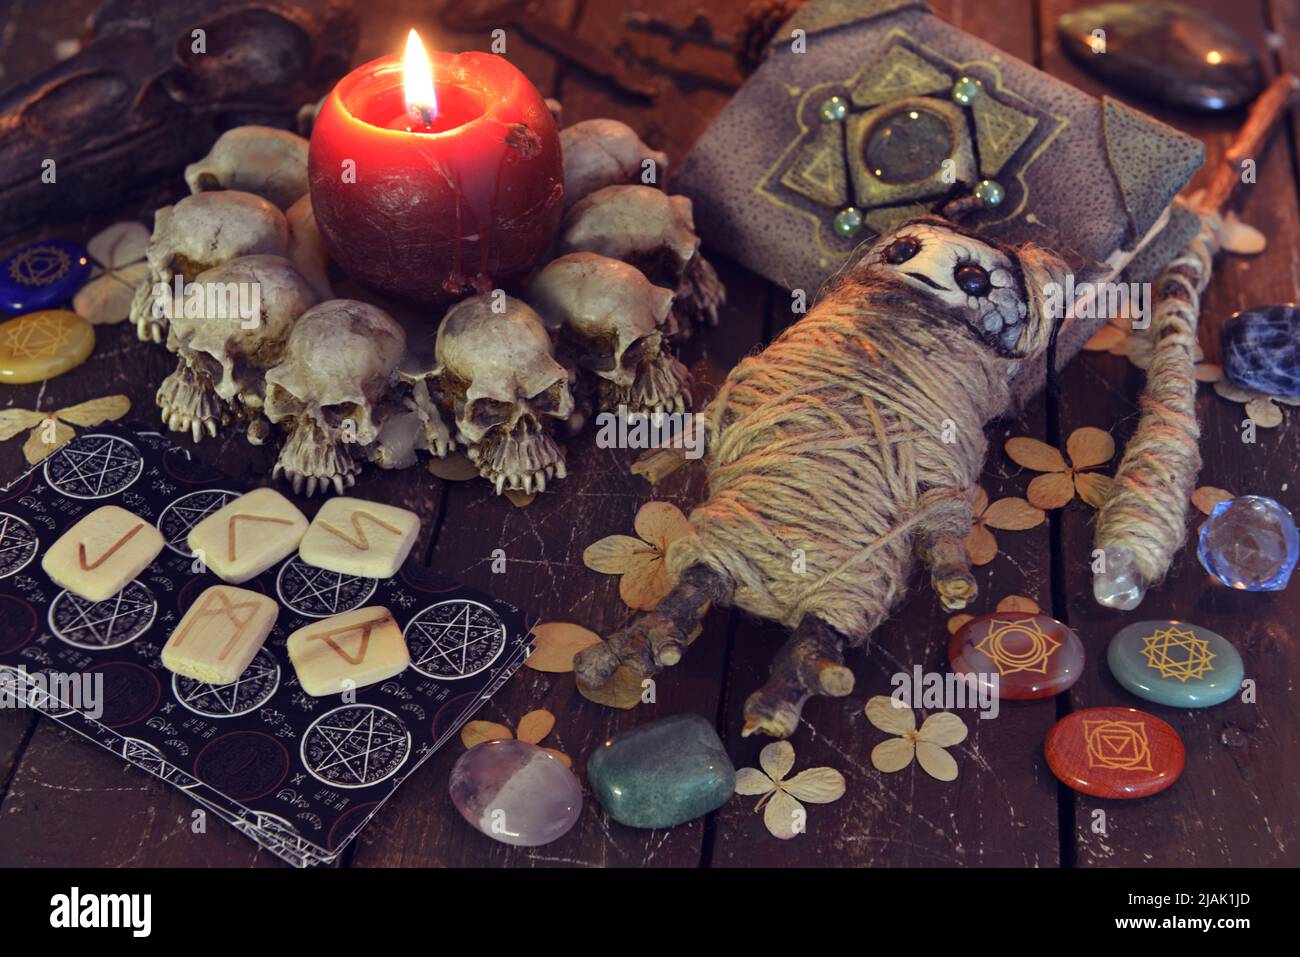 Wicca, la vie ésotérique et occulte avec des objets magiques vintage et une poupée voodoo sur l'autel de la table de sorcière pour les rituels mystiques et la narration de fortune. Hallowee Banque D'Images